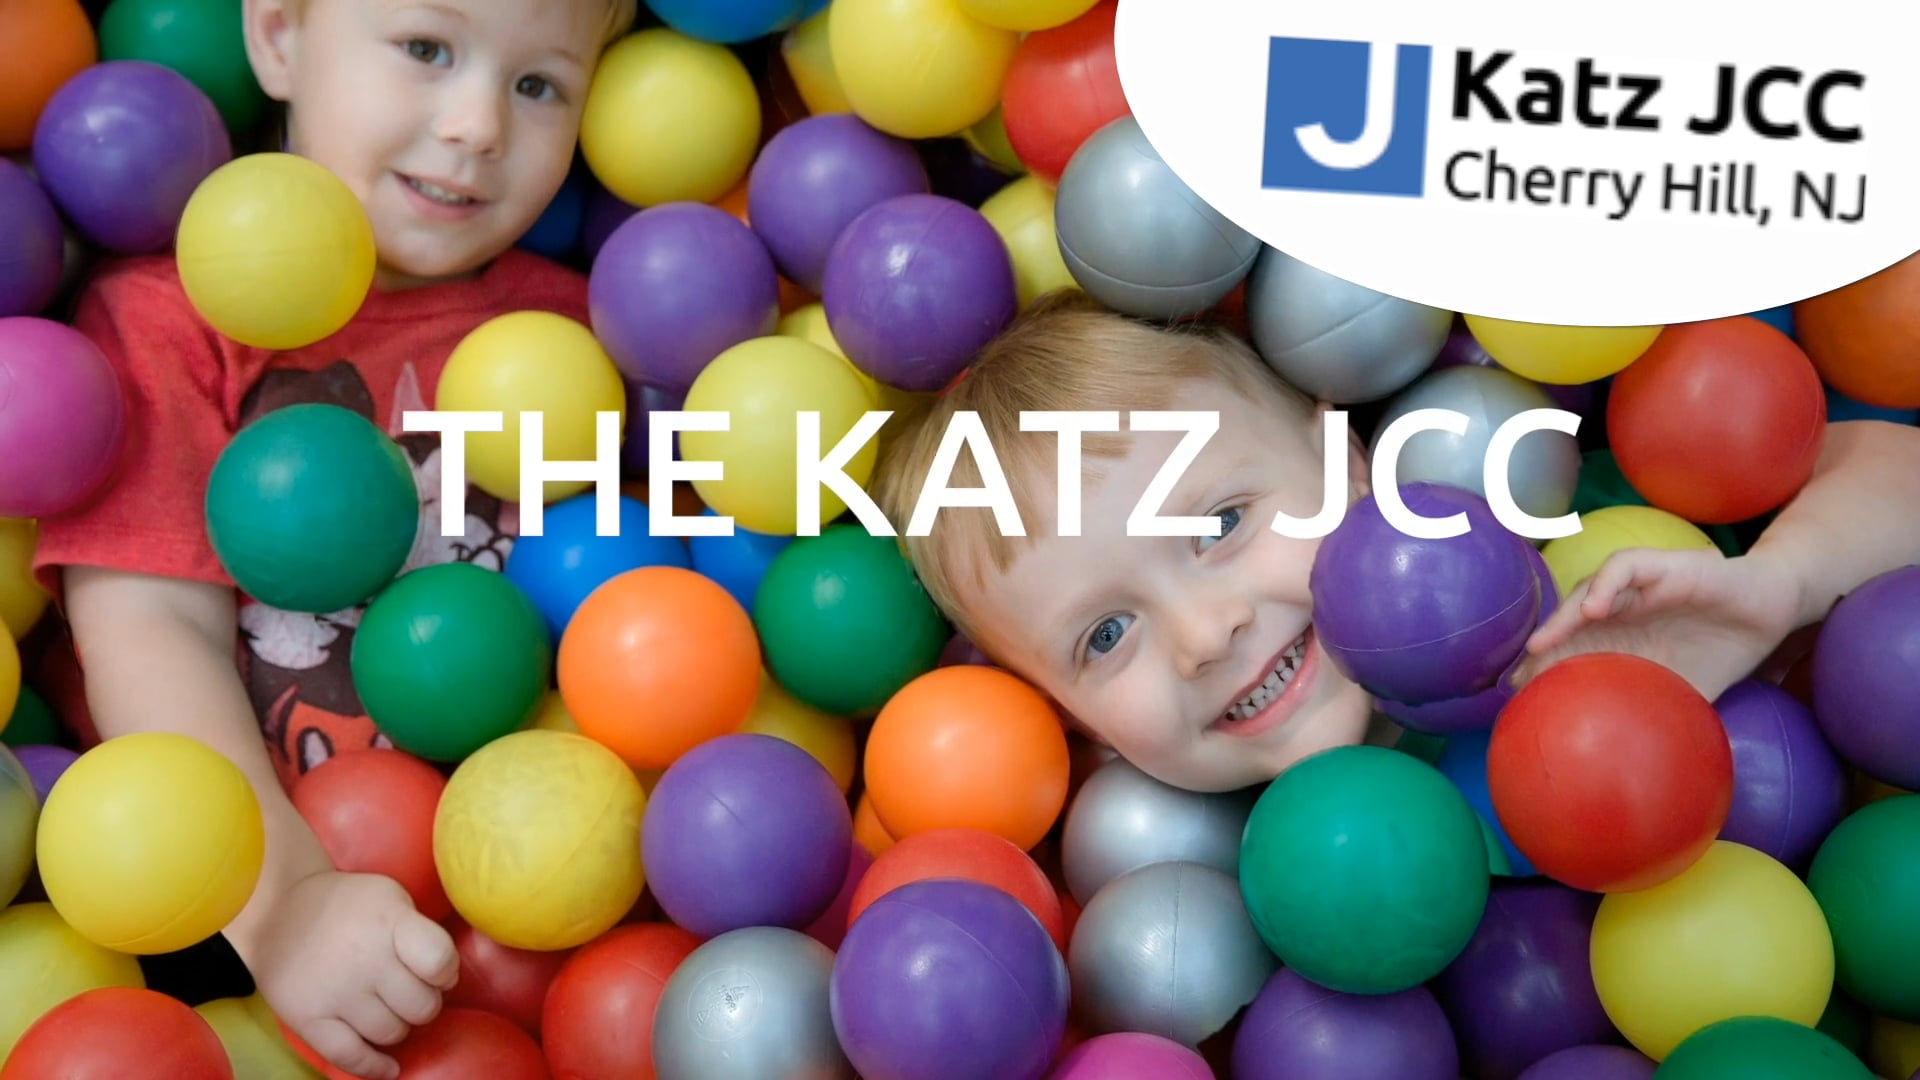 The Katz JCC